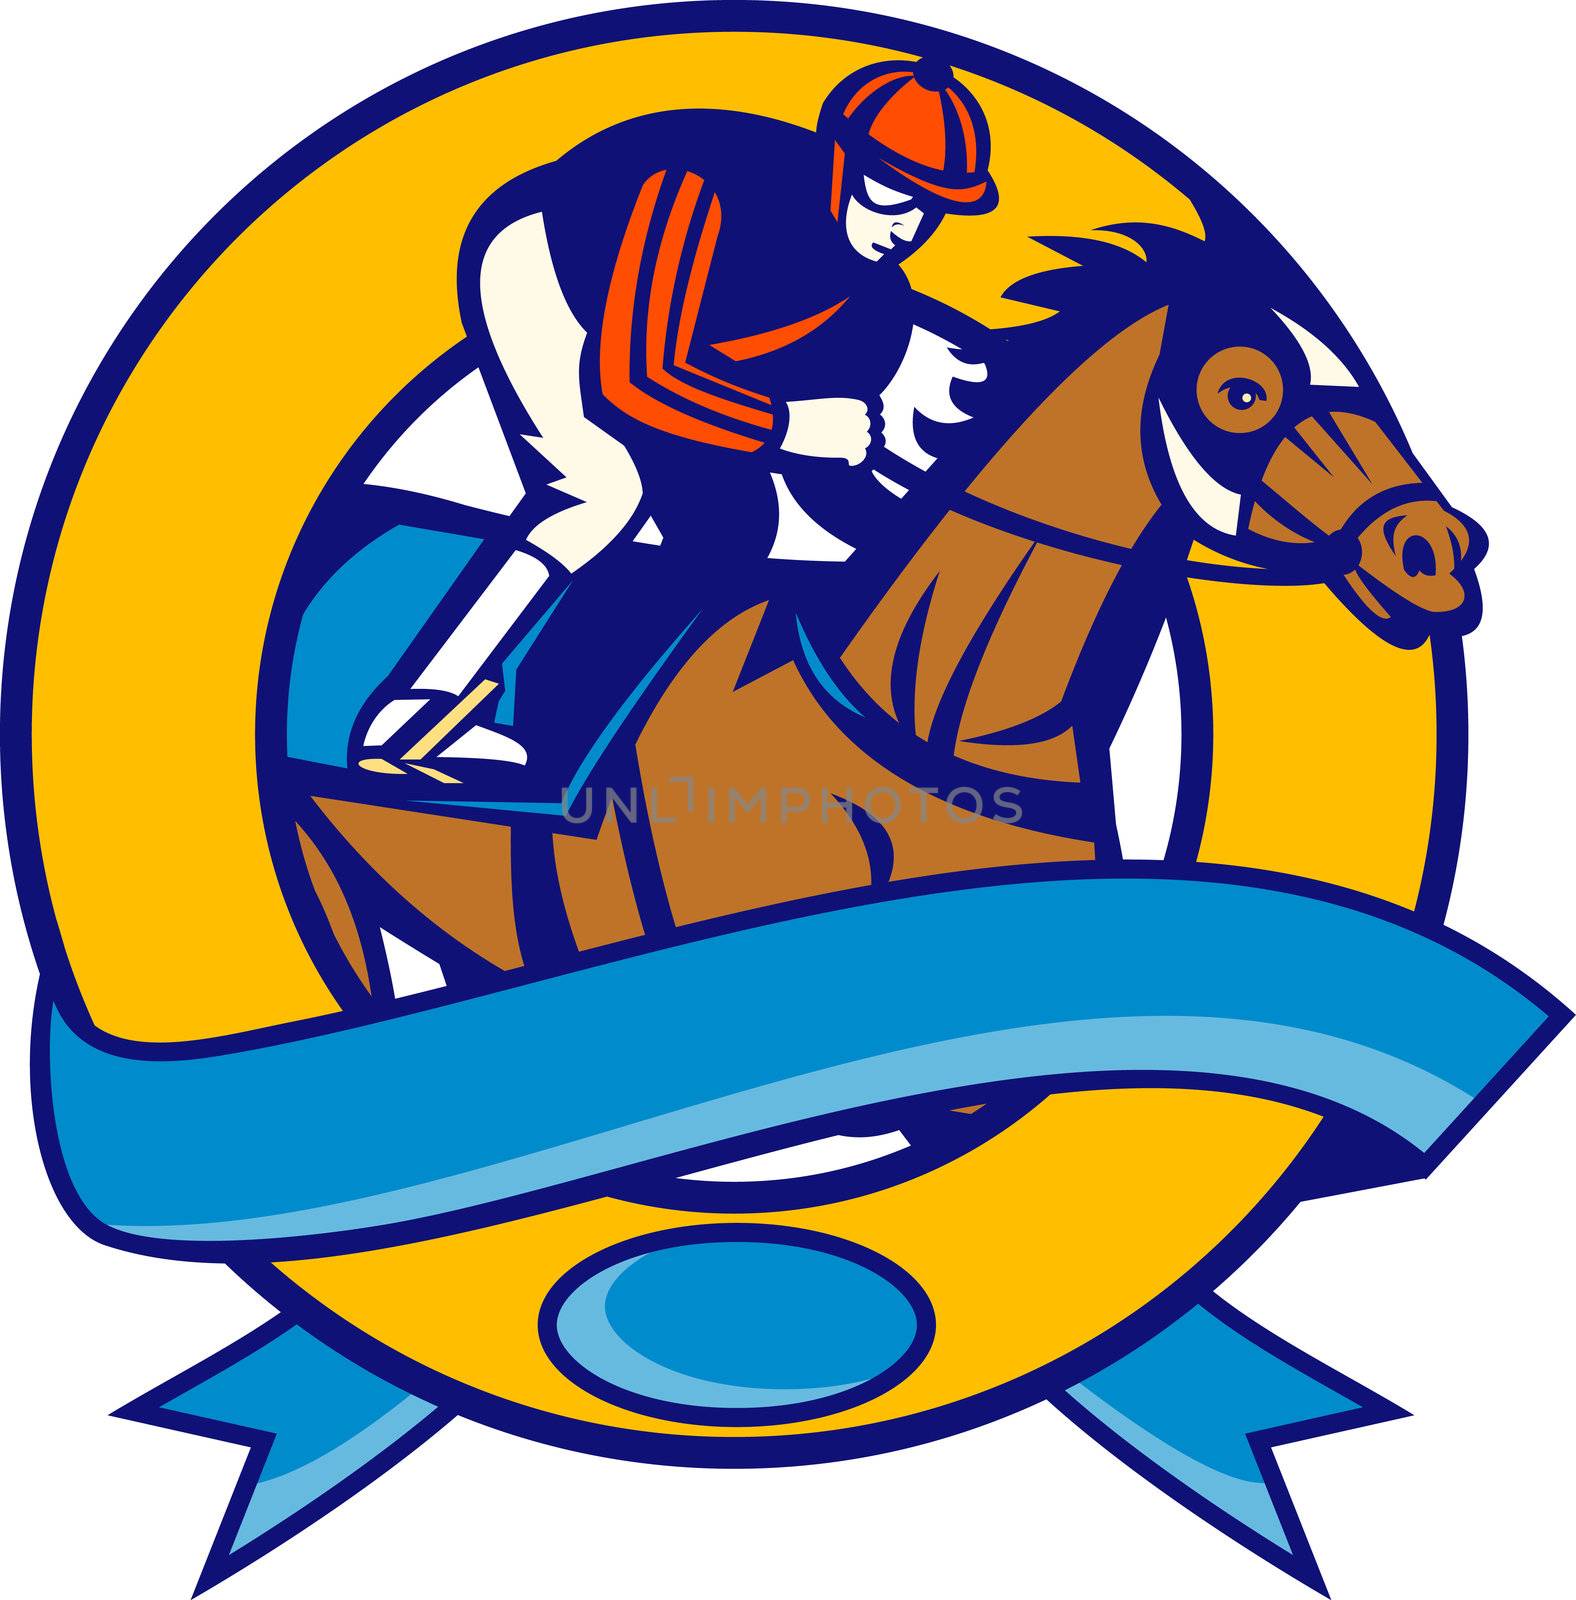 Horse and jockey racing by patrimonio